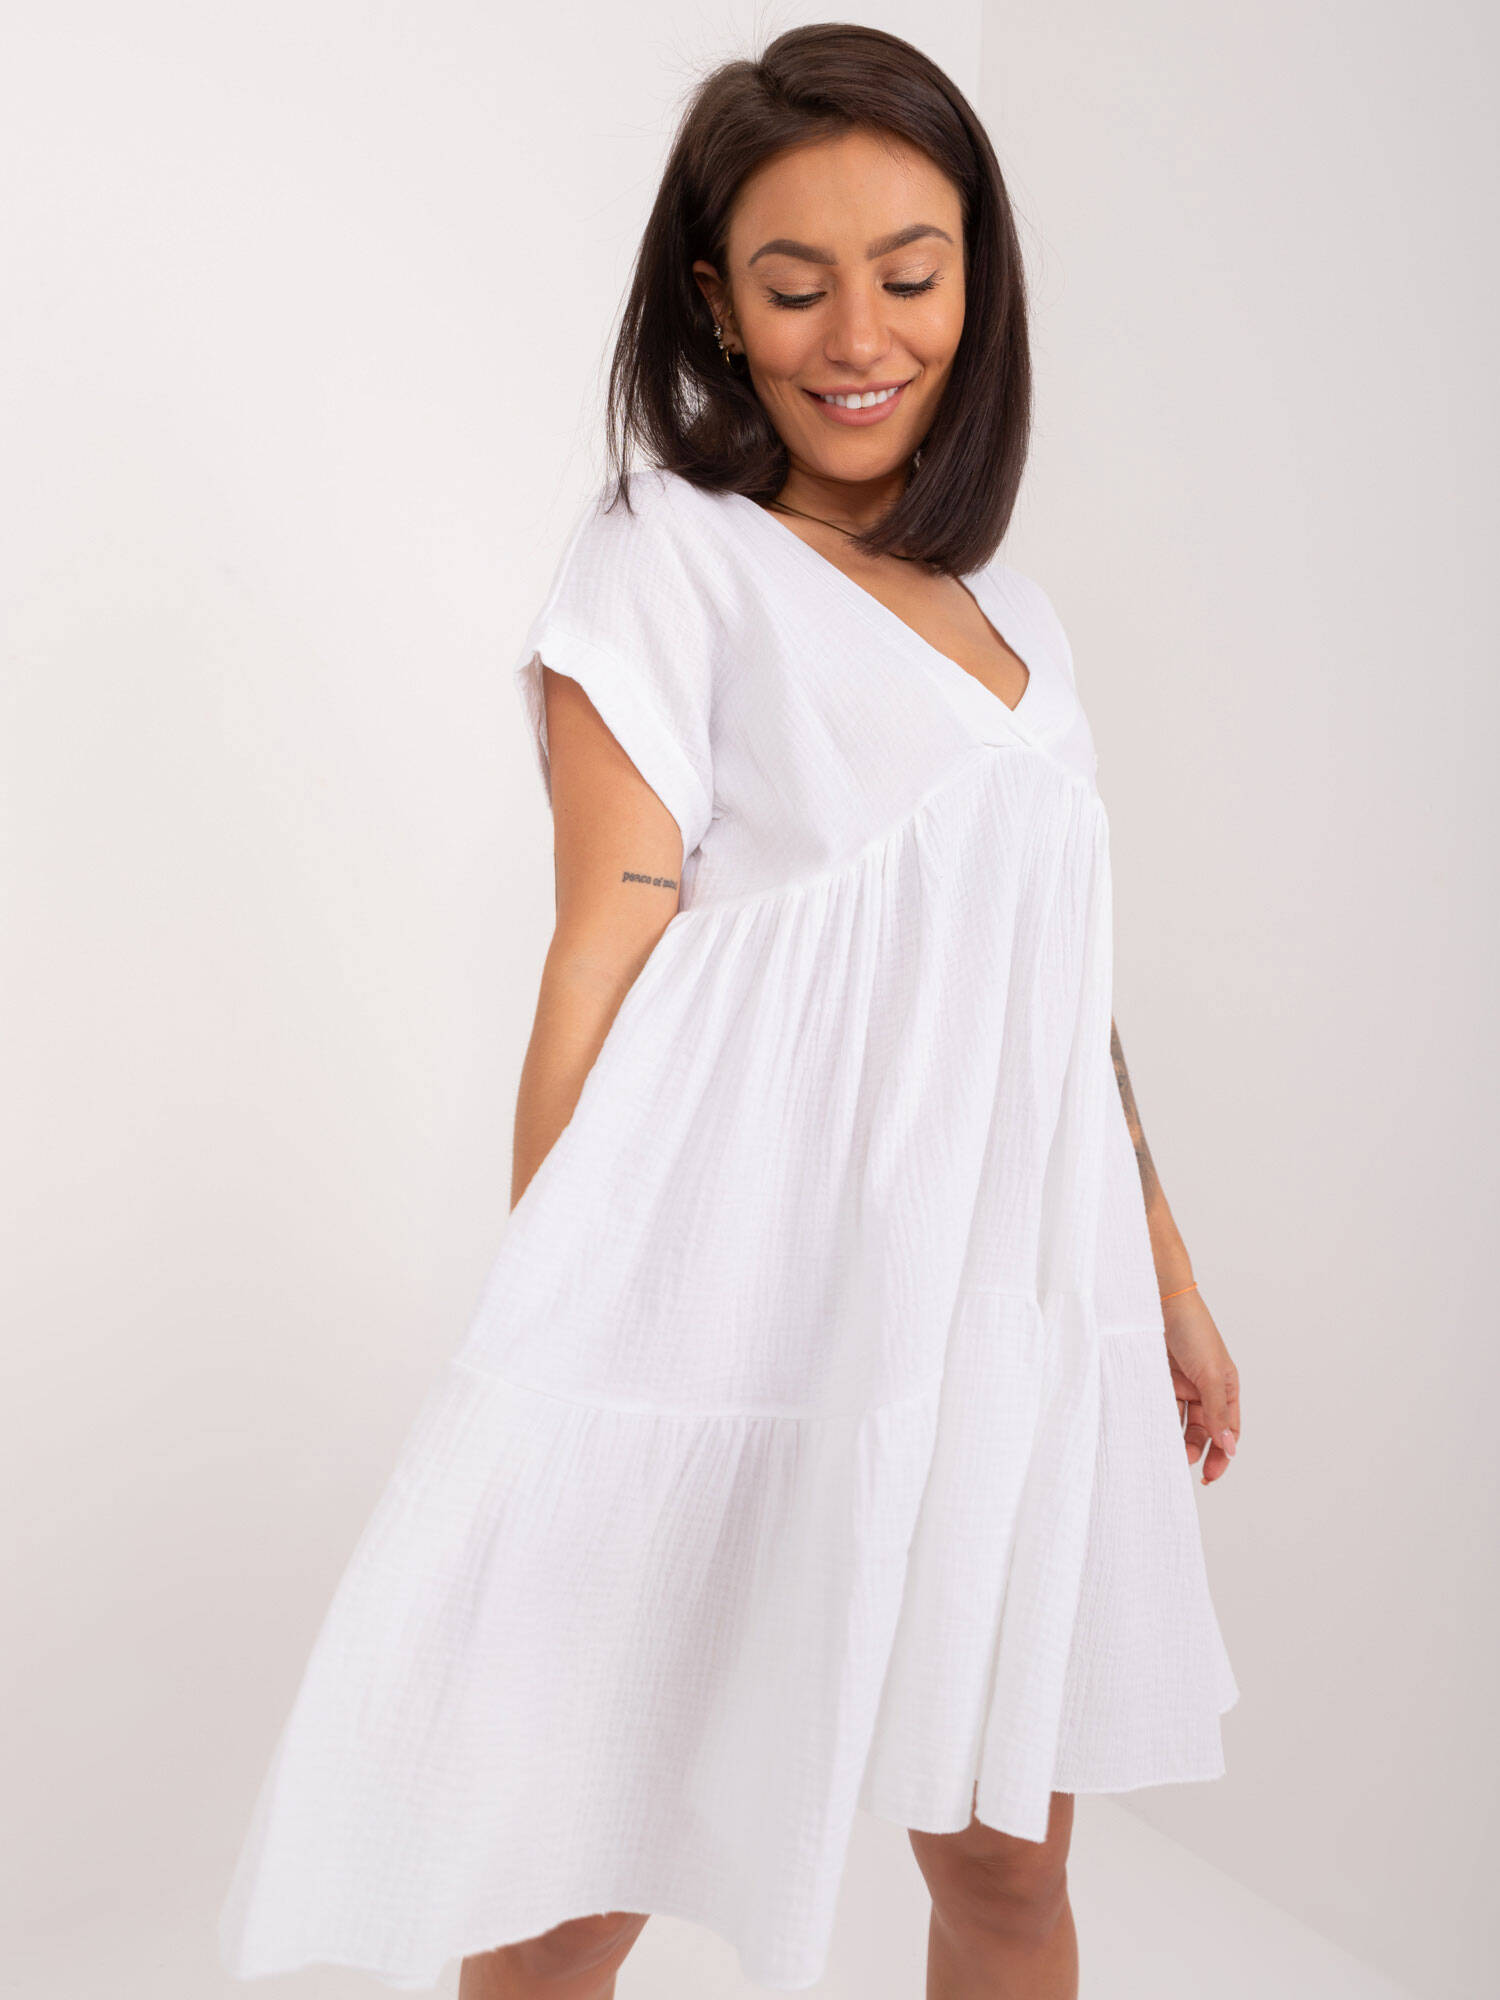 Bawełniana sukienka rozkloszowana biała (6873)